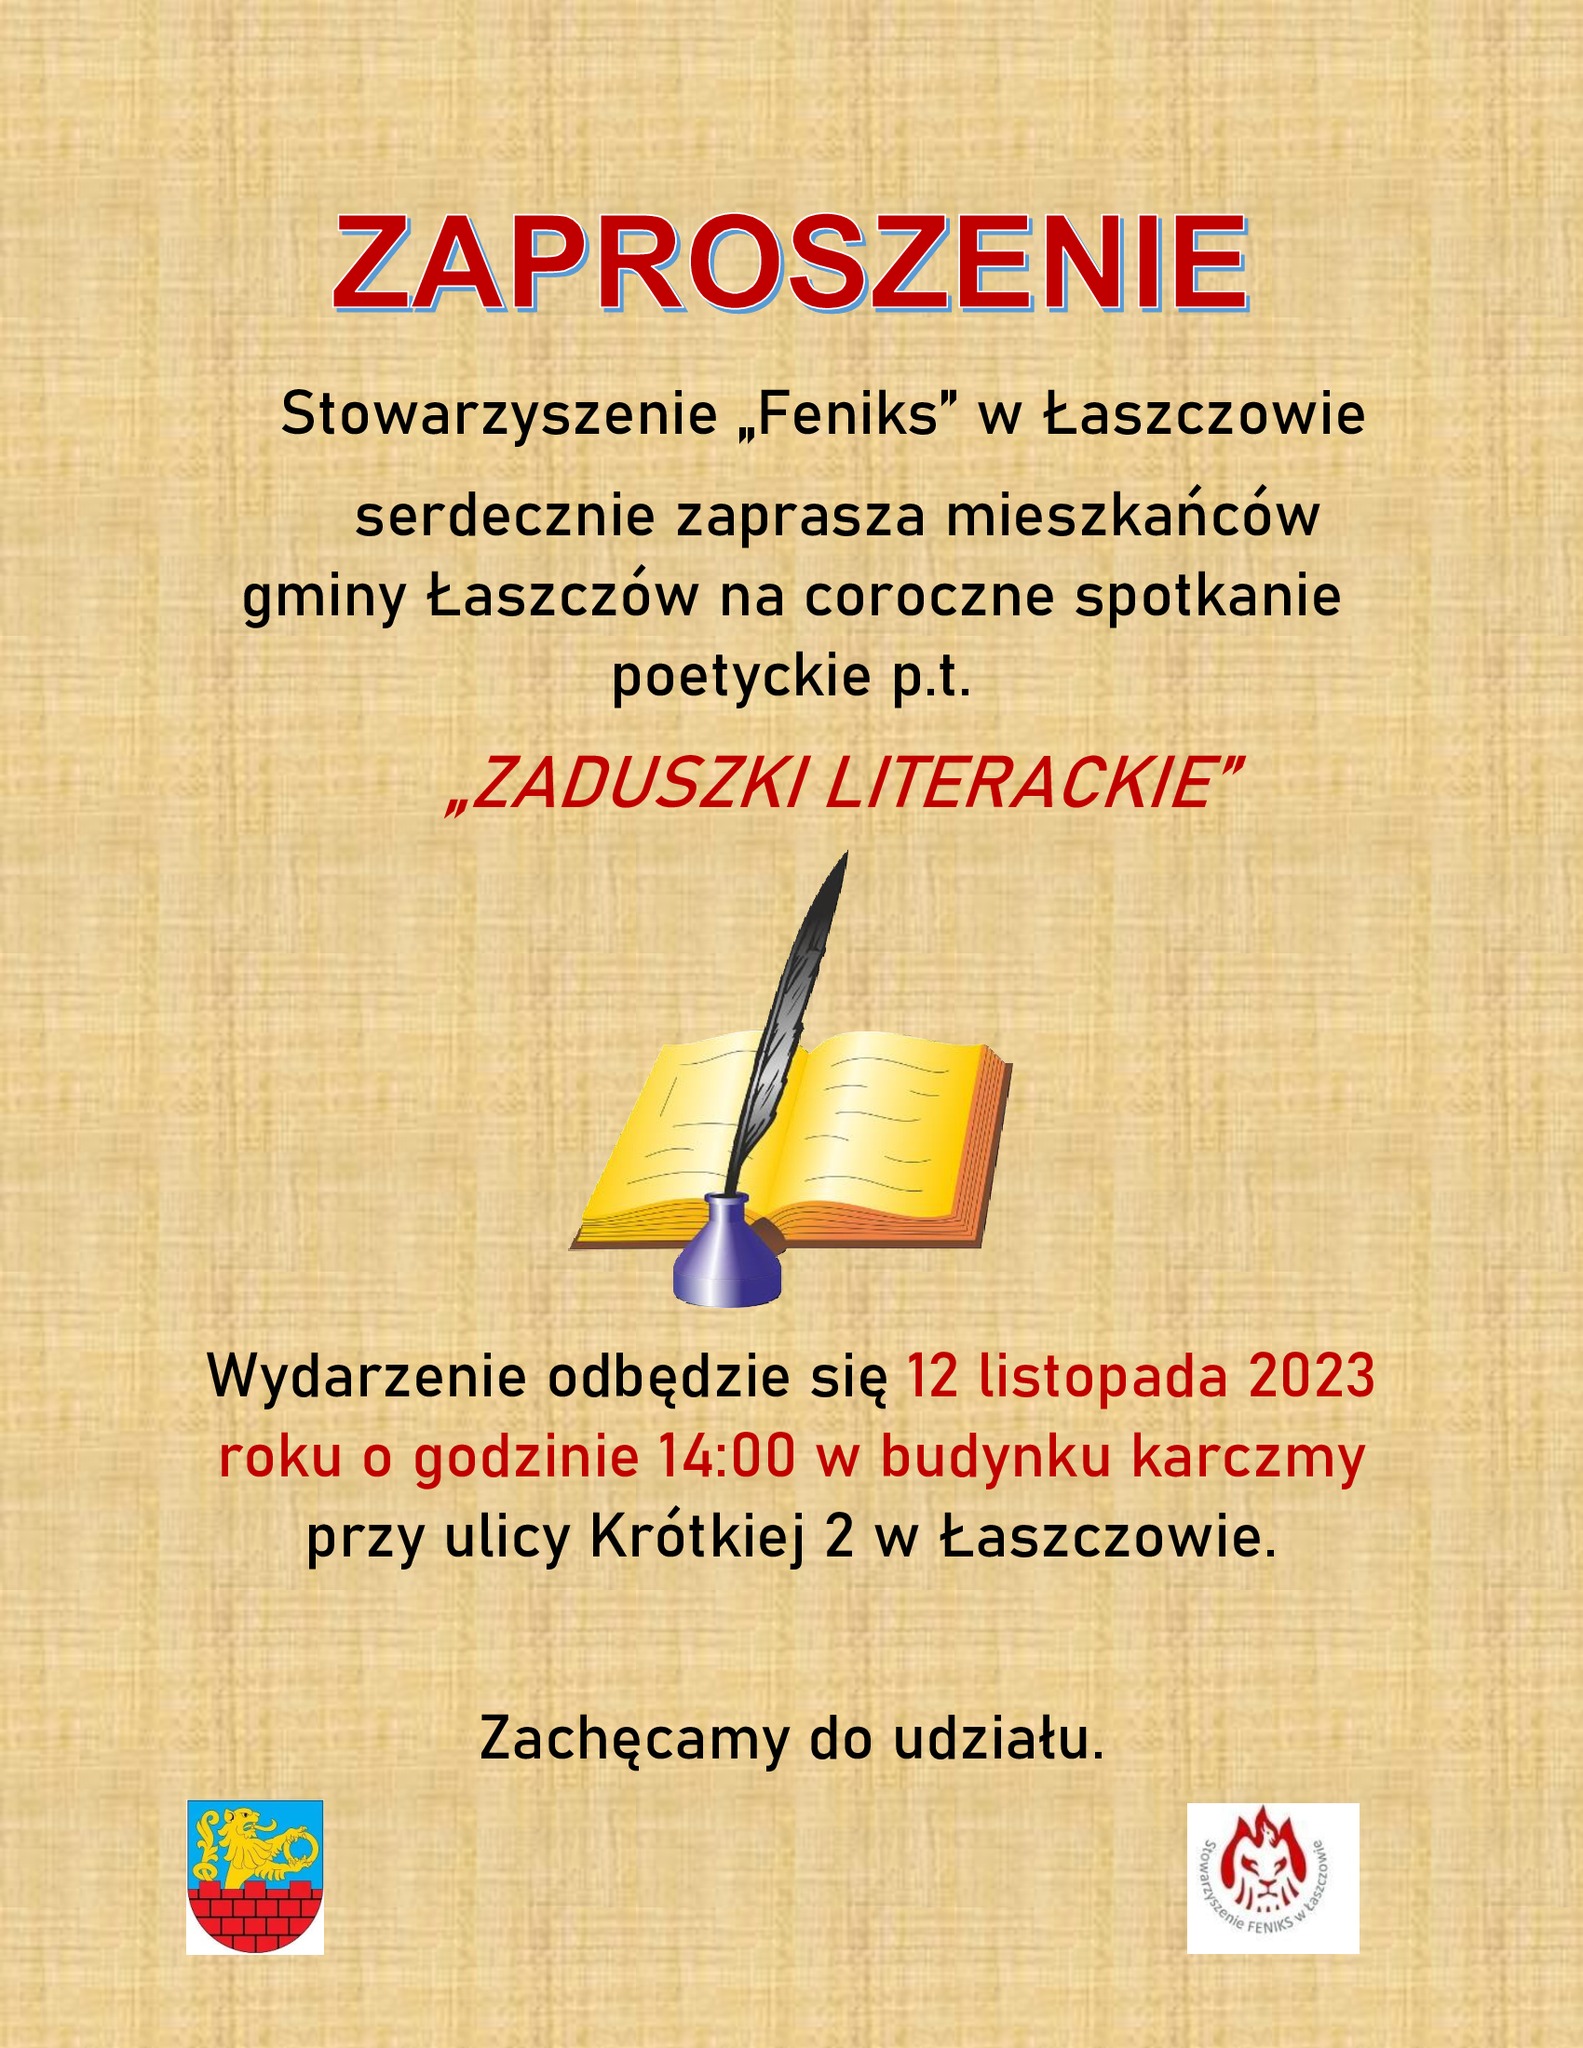 Zaduszki Literackie w Łaszczowie